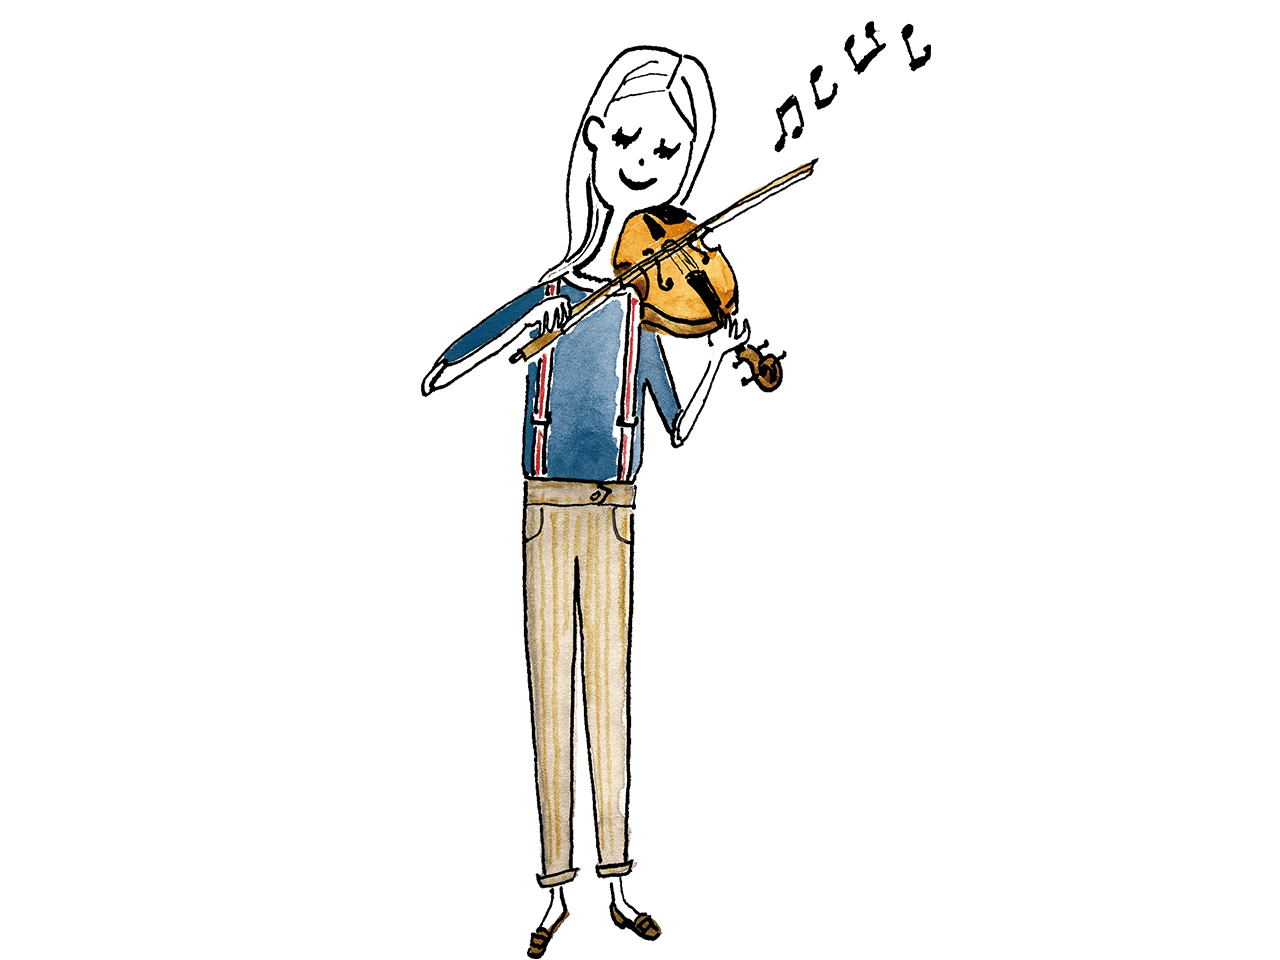 新規開講♪バイオリンコース【水曜日】 弦楽器の花形・バイオリン。音域は4オクターブ以上と広く、演奏者の細やかな感情を全て音で表現することができる、情感豊かな音色が何よりも魅力です。思い通りの音を育てる喜びを、味わってみませんか。 【講師】津田　絵莉子(つだ　えりこ)　開講曜日：水 栃木県出身。3歳よ […]